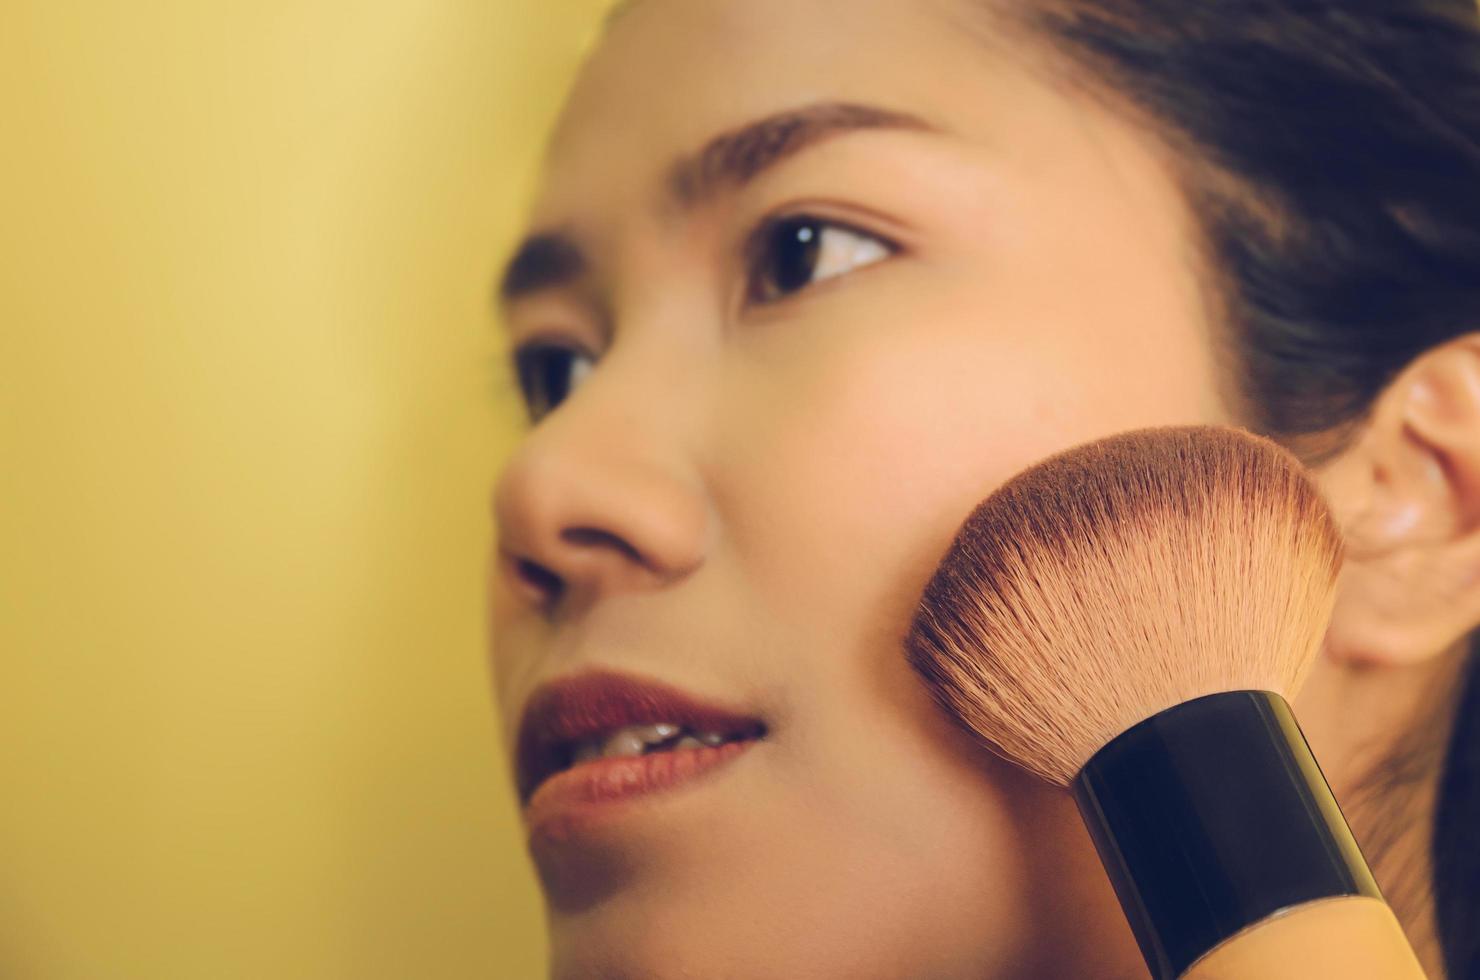 rosto de beleza de mulher asiática, aplicando pincéis na pele por cosméticos. foto